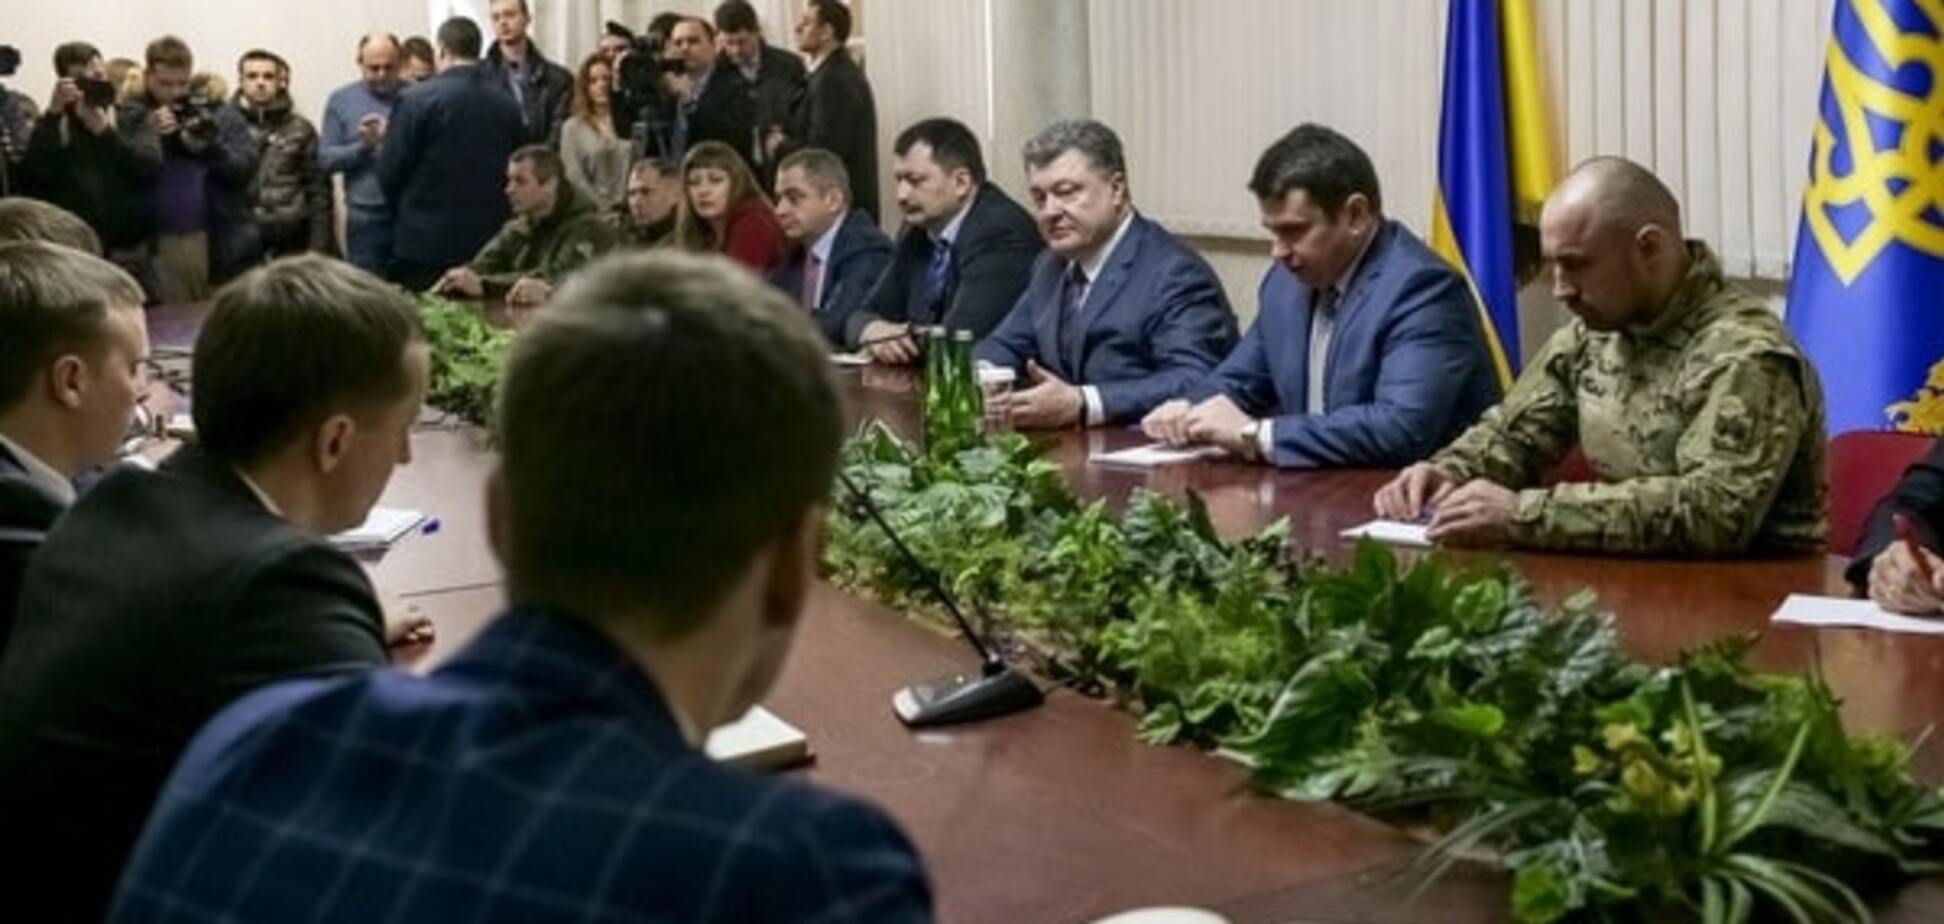 Порошенко сделал важное заявление о борьбе с коррупцией